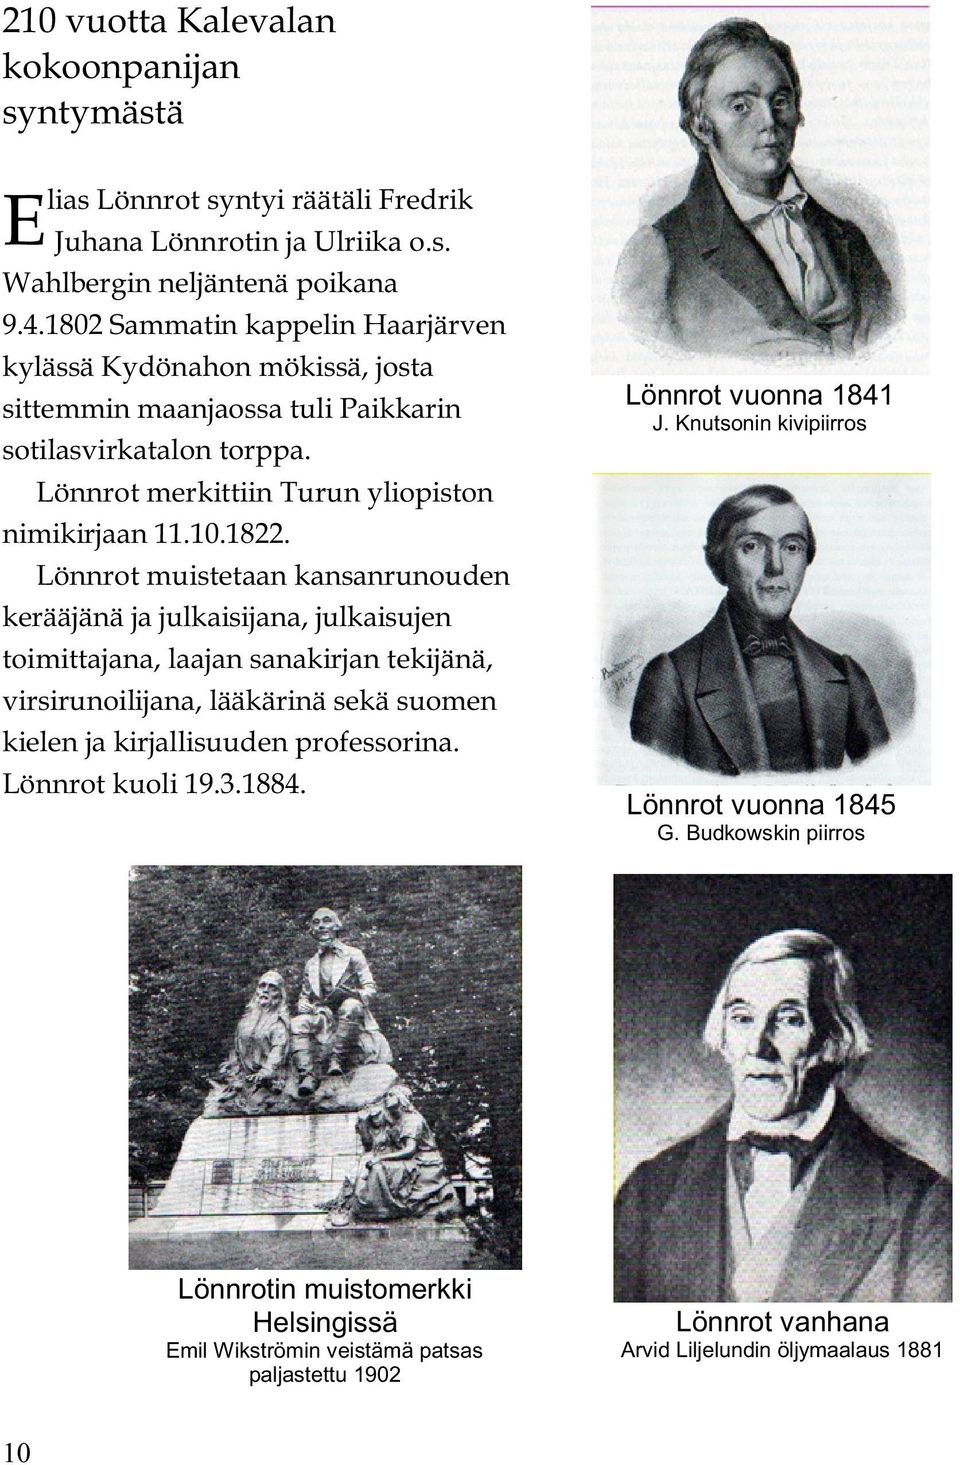 Lönnrot muistetaan kansanrunouden kerääjänä ja julkaisijana, julkaisujen toimittajana, laajan sanakirjan tekijänä, virsirunoilijana, lääkärinä sekä suomen kielen ja kirjallisuuden professorina.